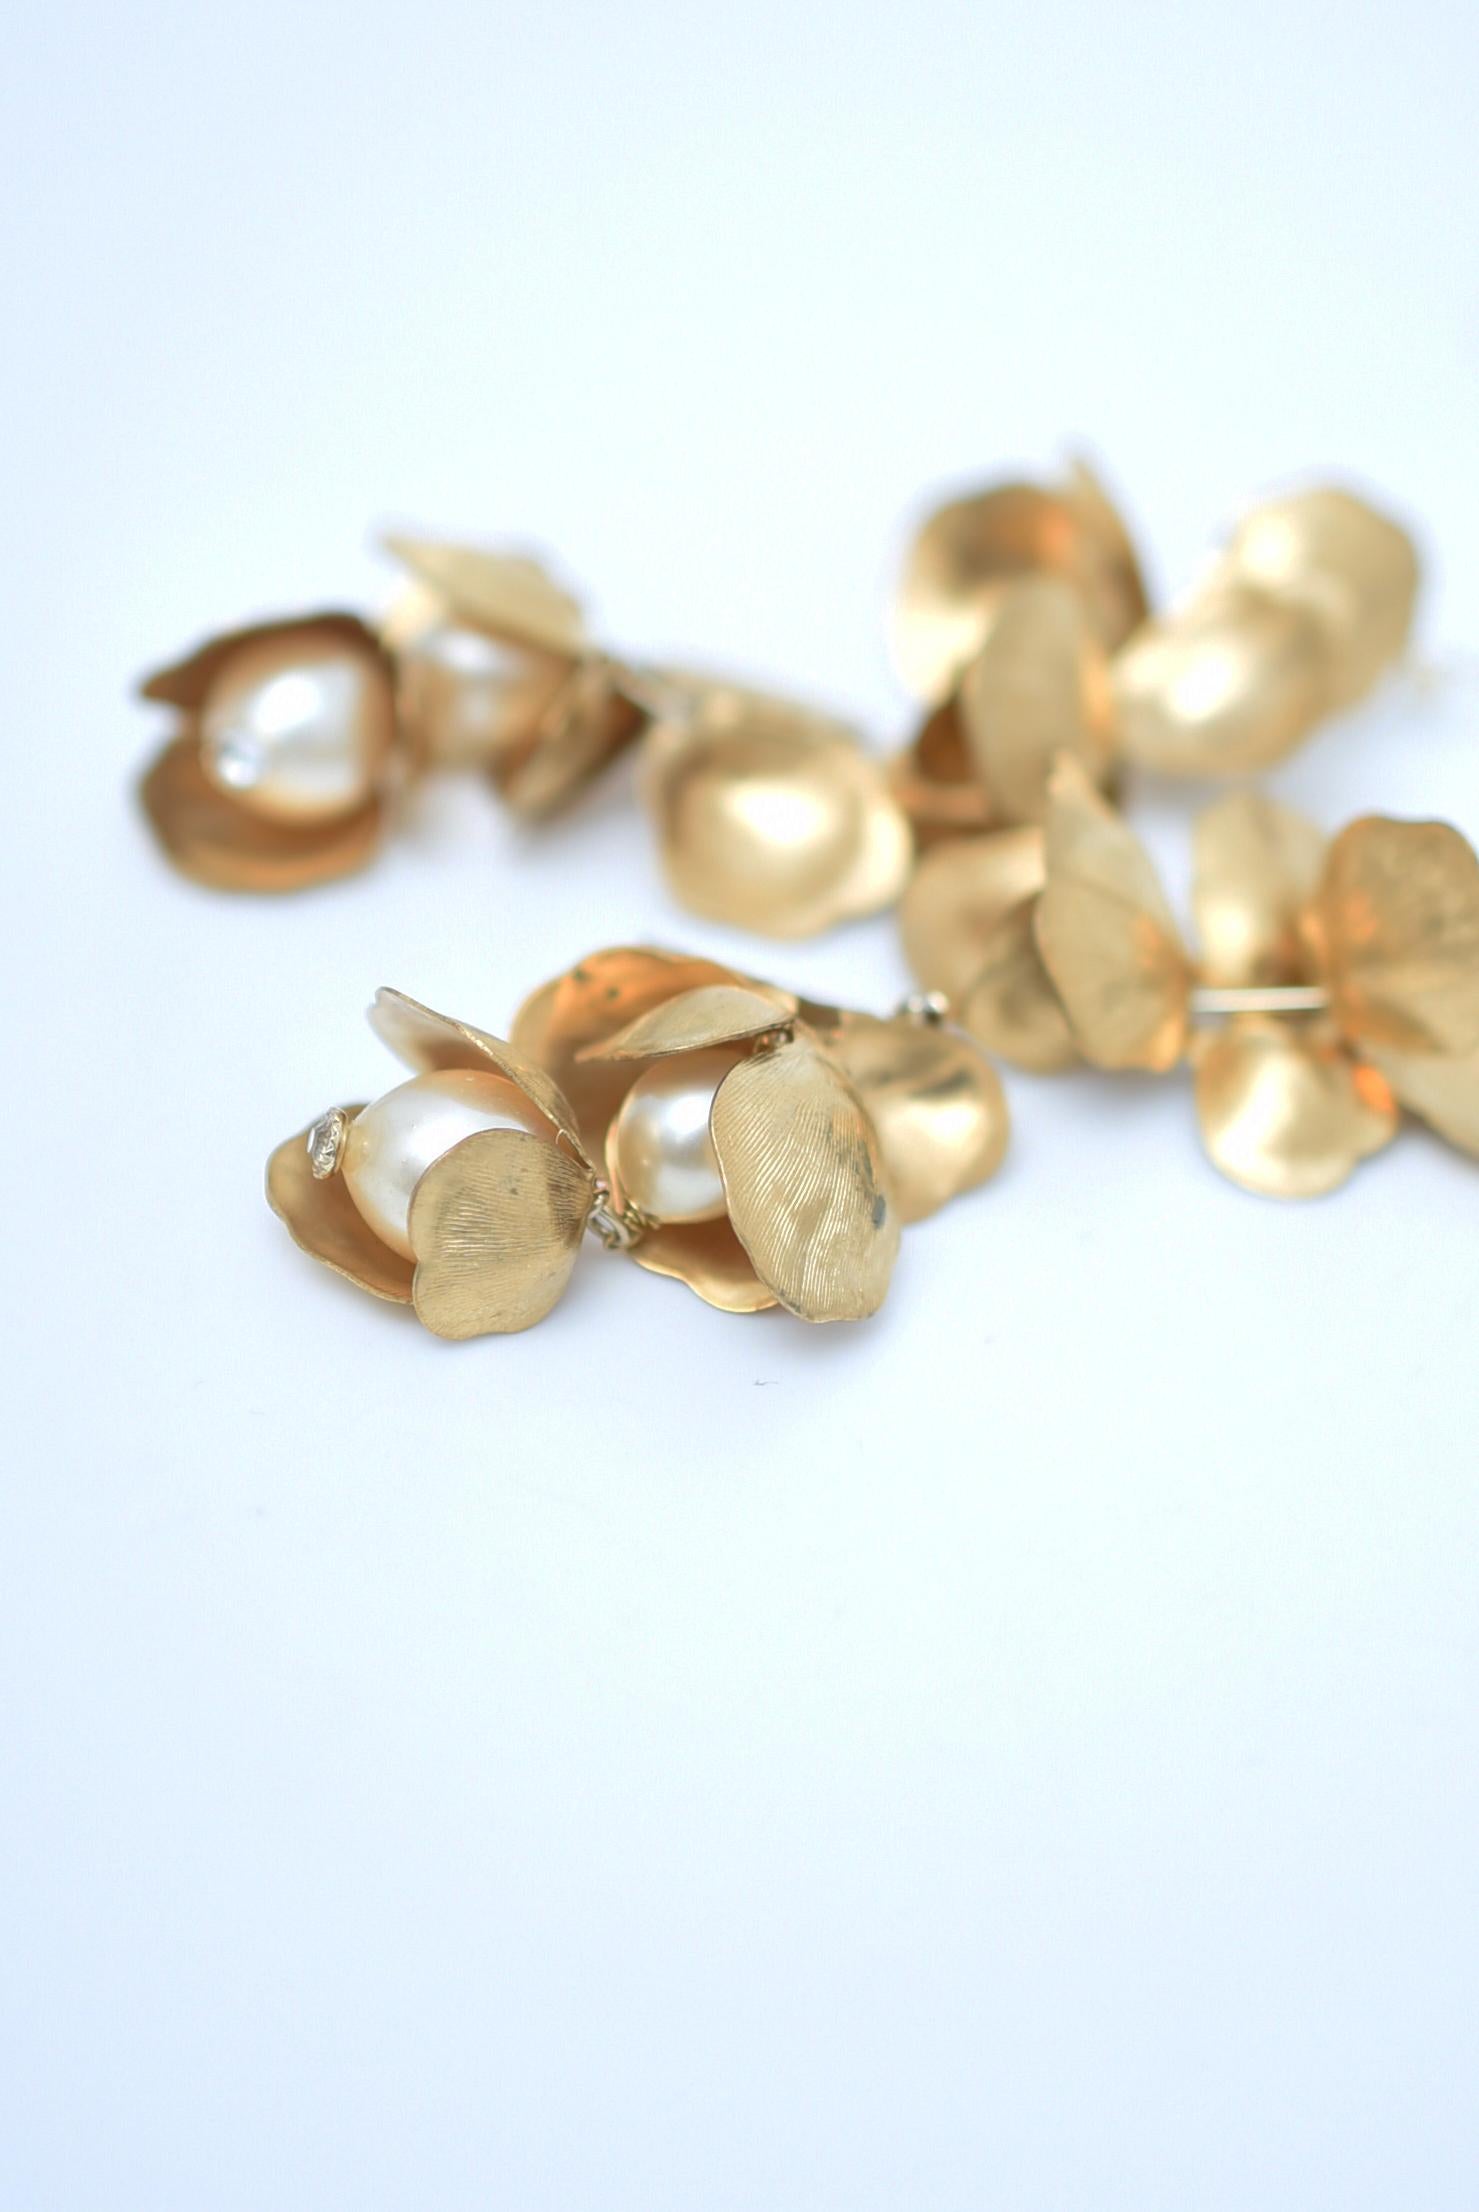 MATERIAL:Laiton, perles de verre japonaises vintage des années 1970, acier inoxydable.
taille : longueur 6cm


Ces boucles d'oreilles ont un aspect très glamour.
L'or élégant et les perles vintage illumineront votre visage.
Un article indispensable